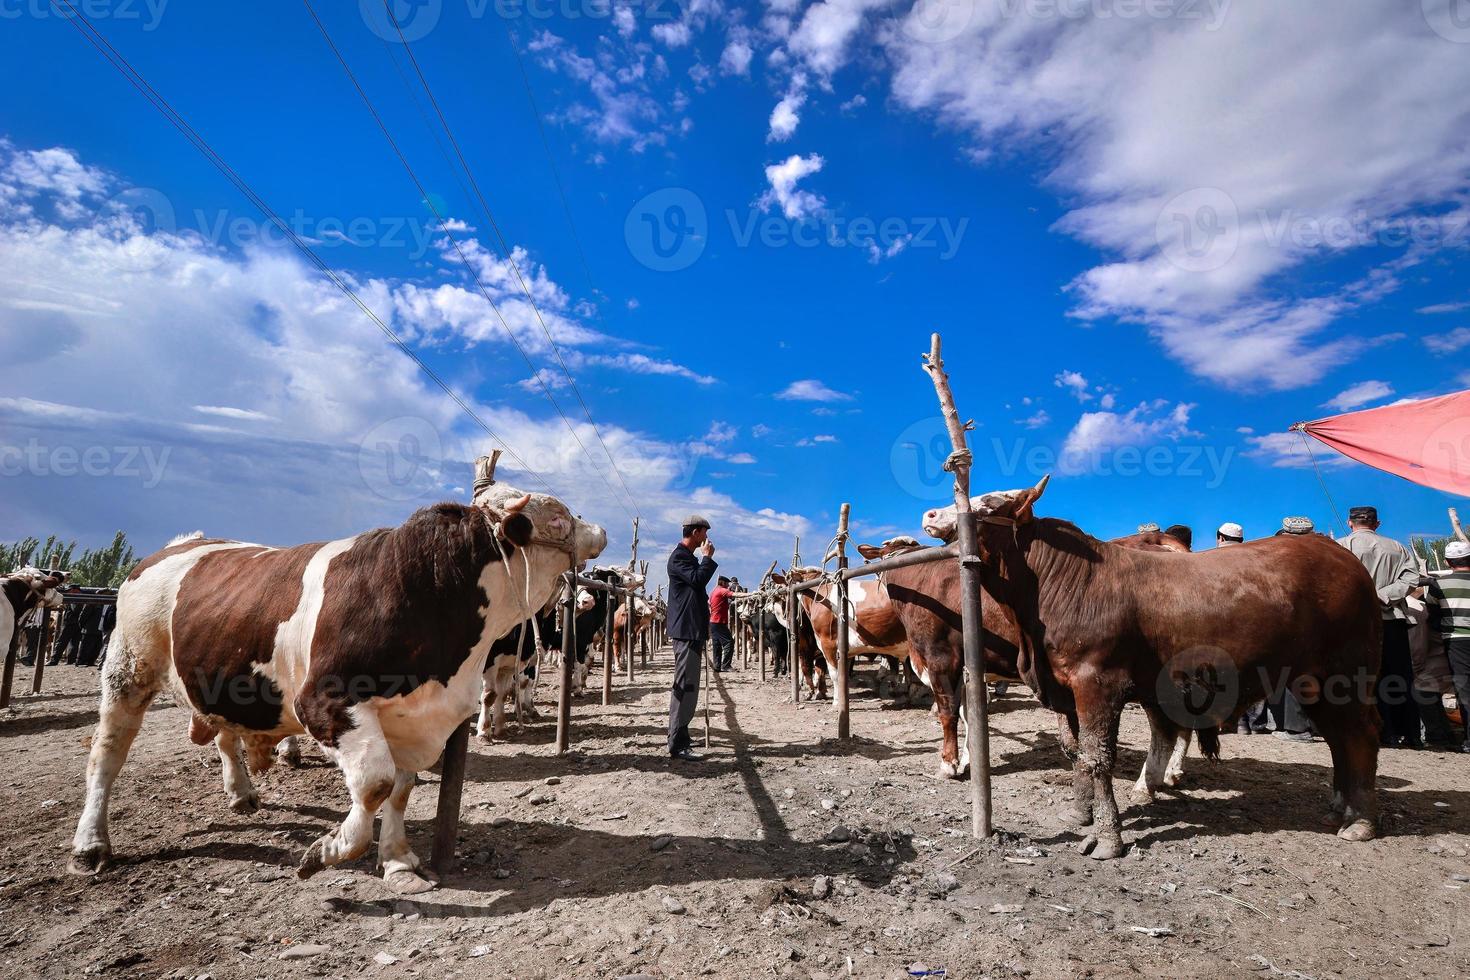 vee aan het wachten voor handel in de vee en schapen bazaar in xinjiang foto